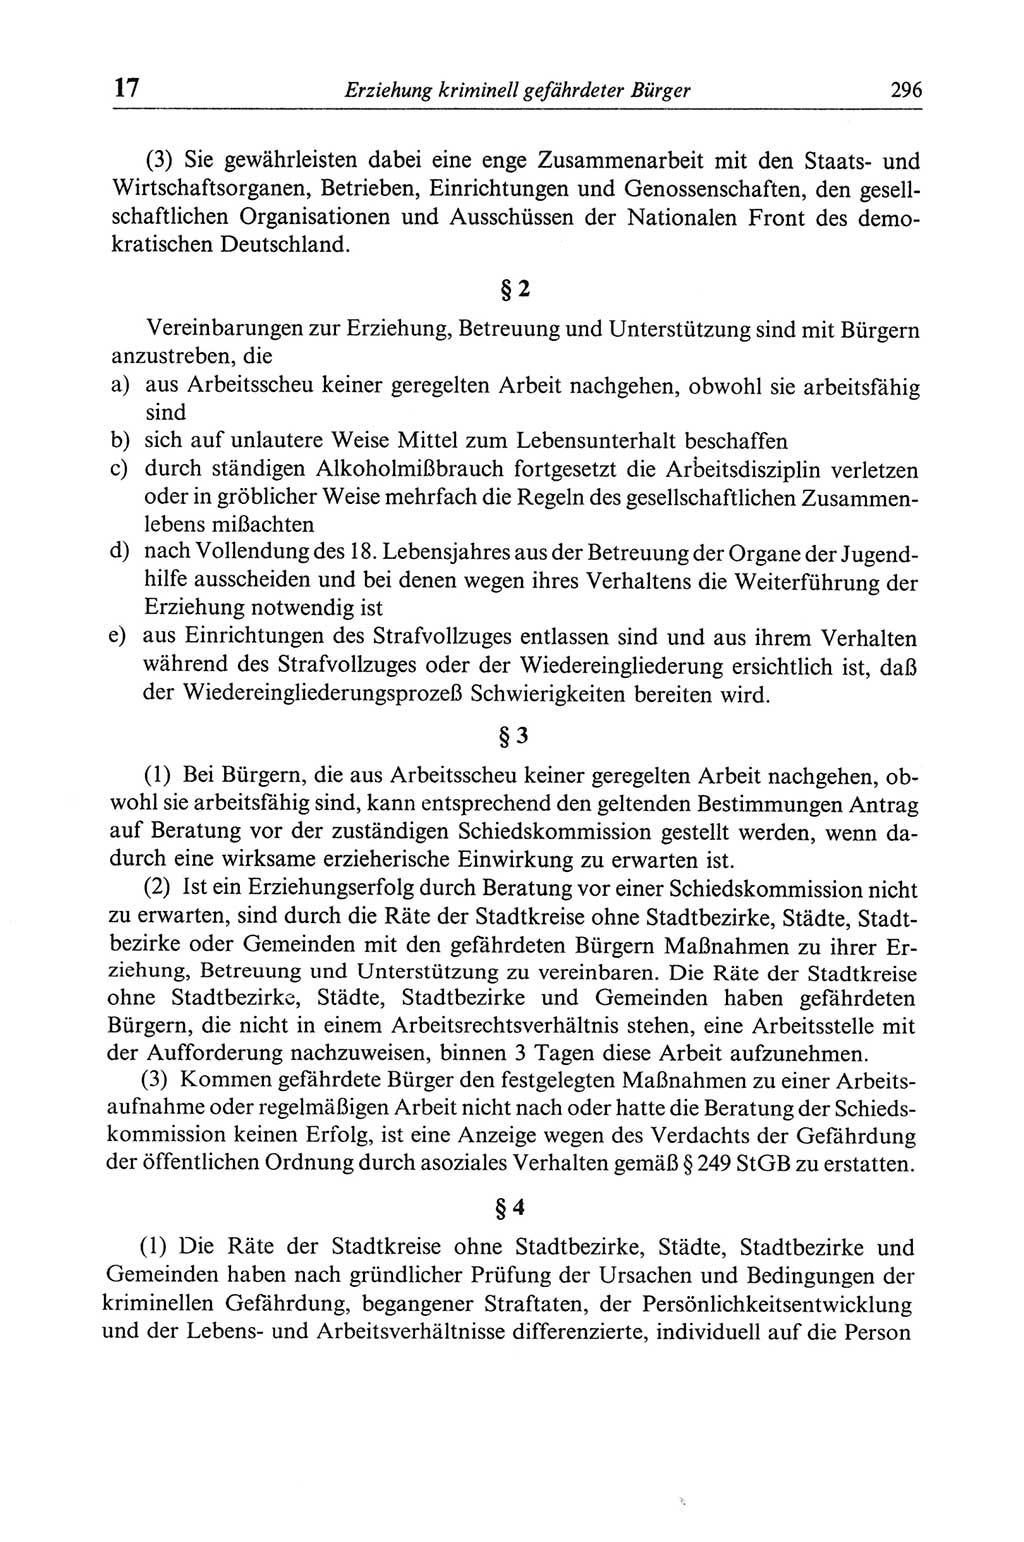 Strafgesetzbuch (StGB) der Deutschen Demokratischen Republik (DDR) und angrenzende Gesetze und Bestimmungen 1968, Seite 296 (StGB Ges. Best. DDR 1968, S. 296)